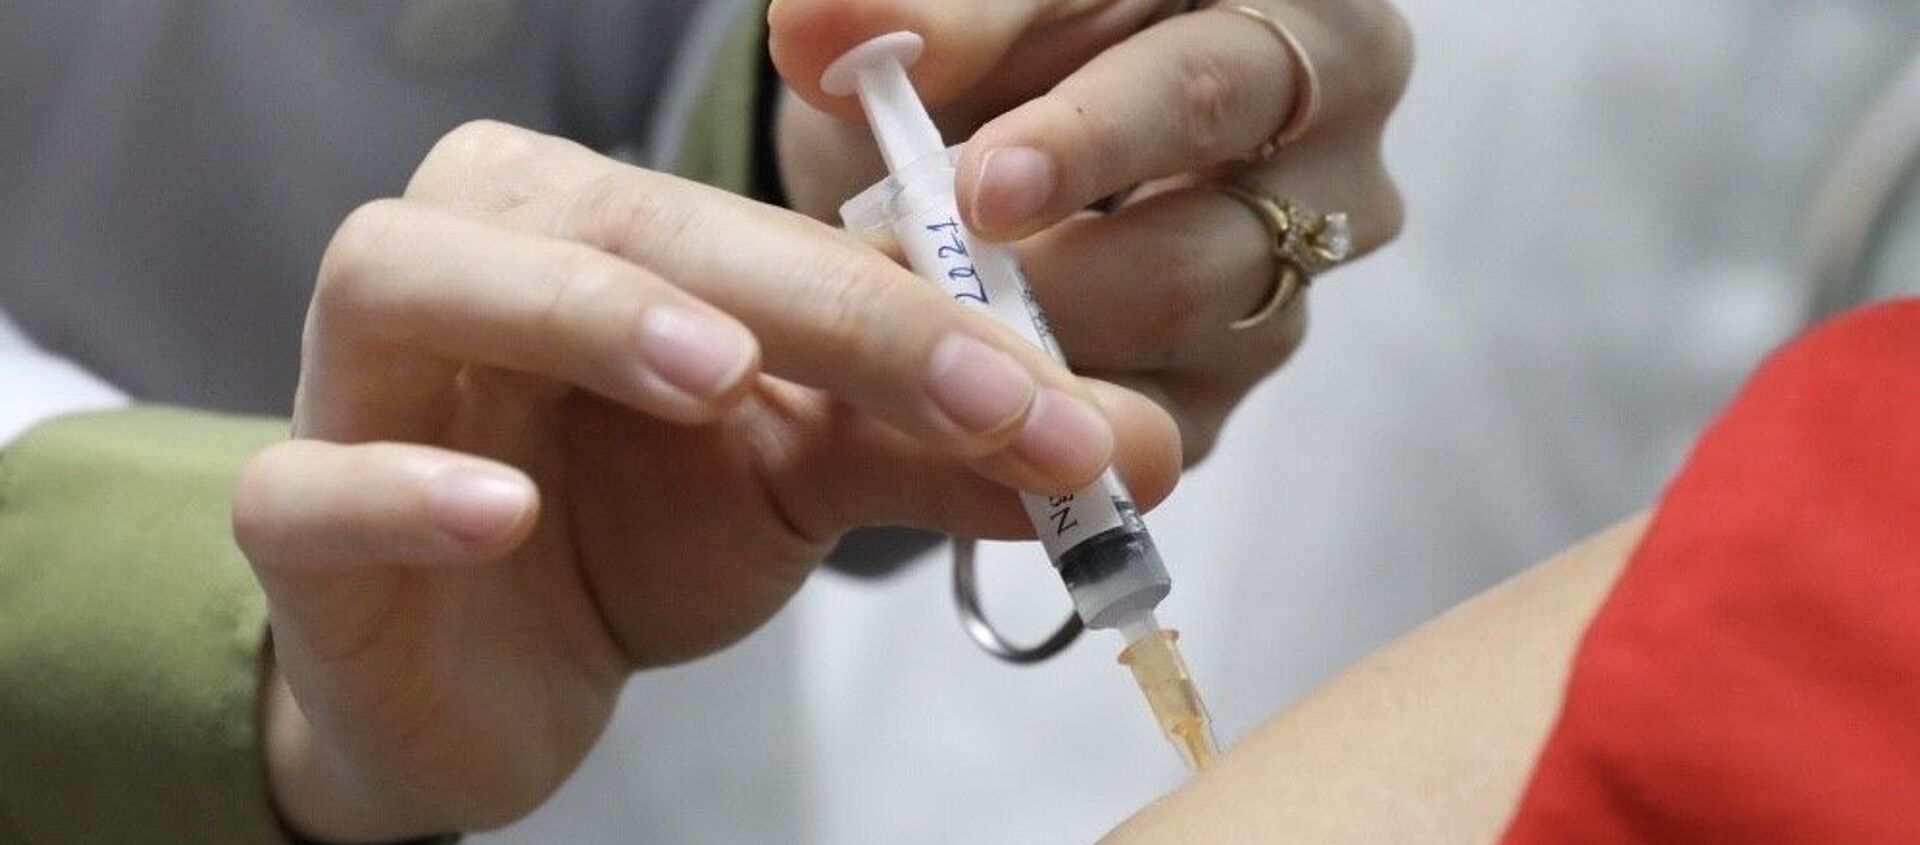 Tiêm thử nghiệm vaccine Nano Covax giai đoạn 2 cho tình nguyện viên. - Sputnik Việt Nam, 1920, 26.02.2021